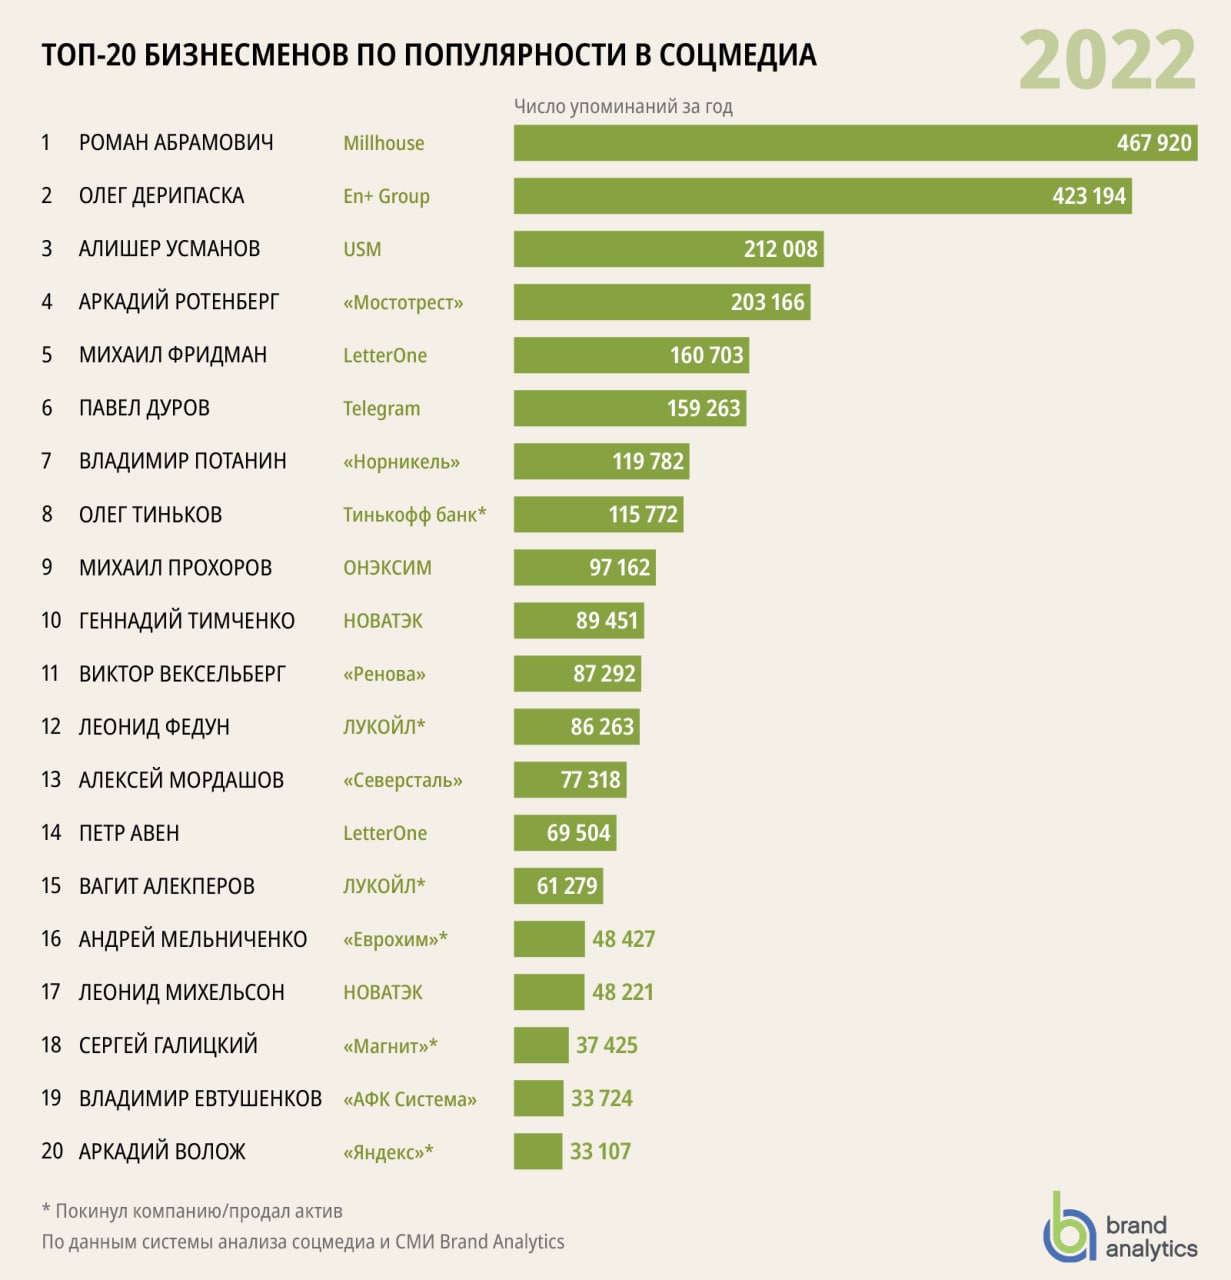 Абрамович, Дерипаска и Усманов стали самыми популярными в соцмедиа среди российских бизнесменов